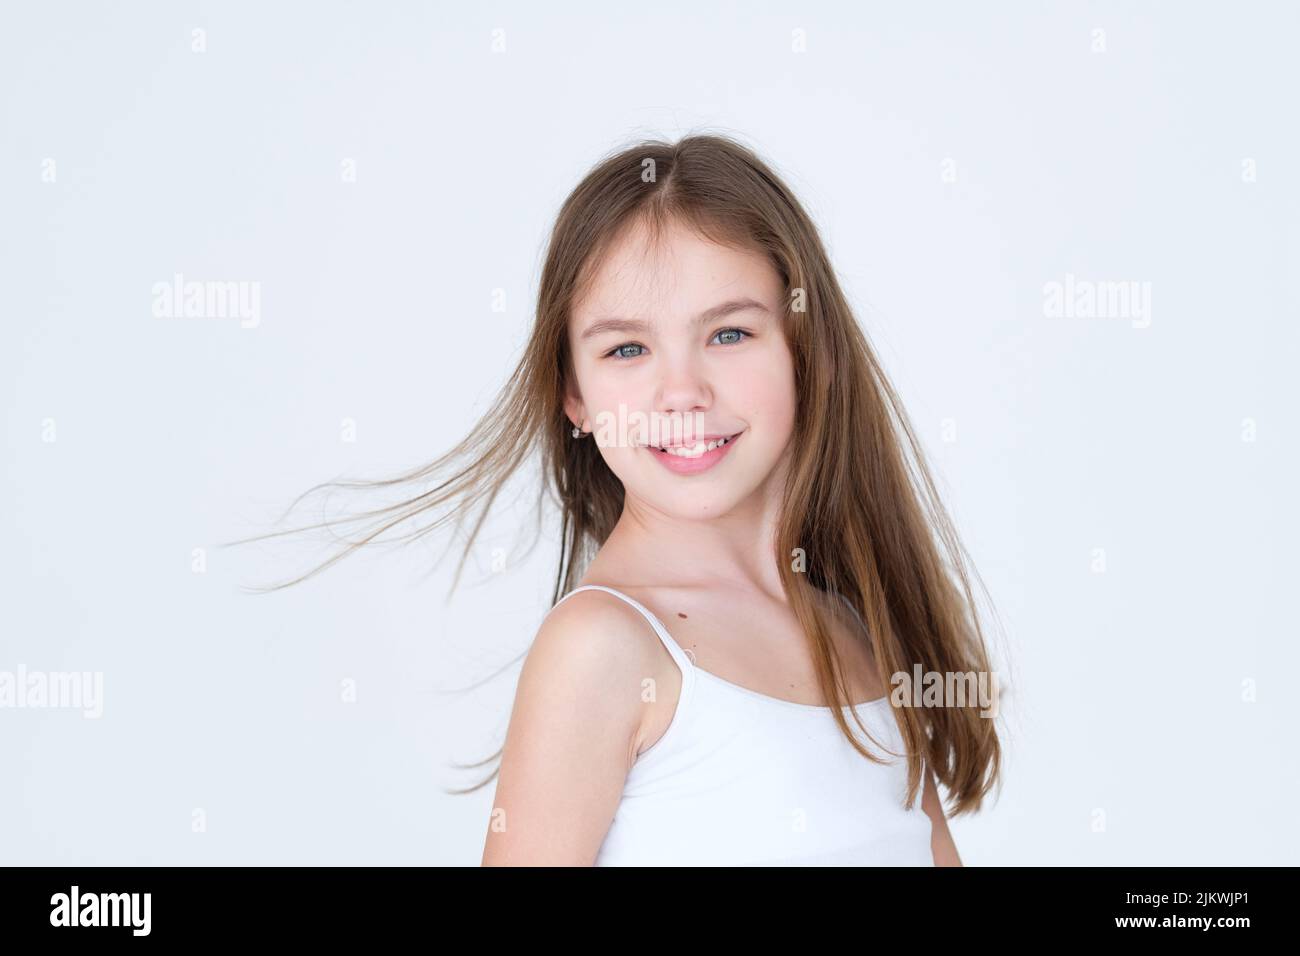 Lächelnd hübsches Mädchen junge Mode-Modell Porträt Stockfoto